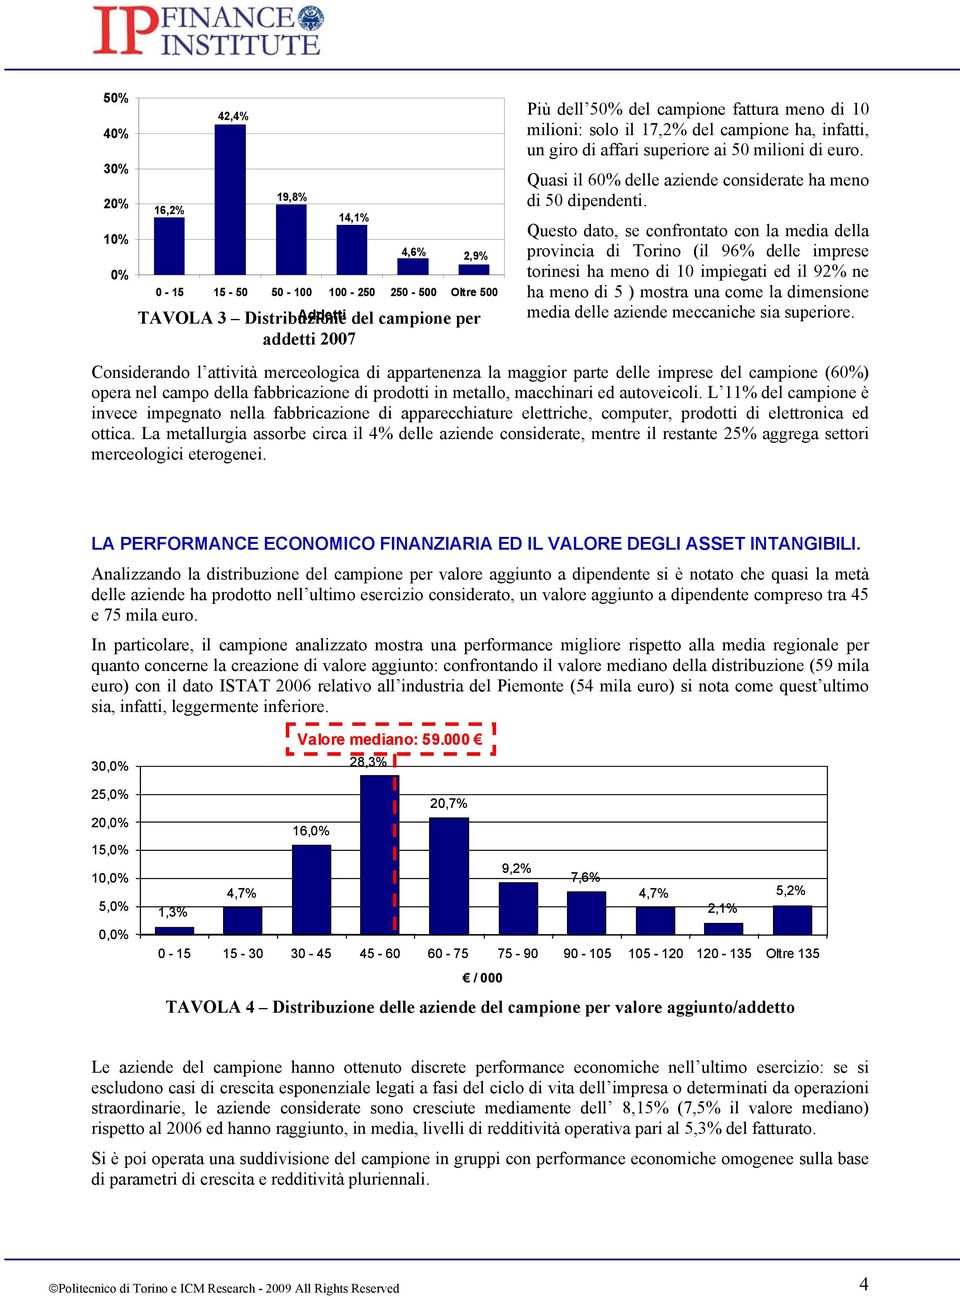 Questo dato, se confrontato con la media della provincia di Torino (il 96% delle imprese torinesi ha meno di 10 impiegati ed il 92% ne ha meno di 5 ) mostra una come la dimensione media delle aziende